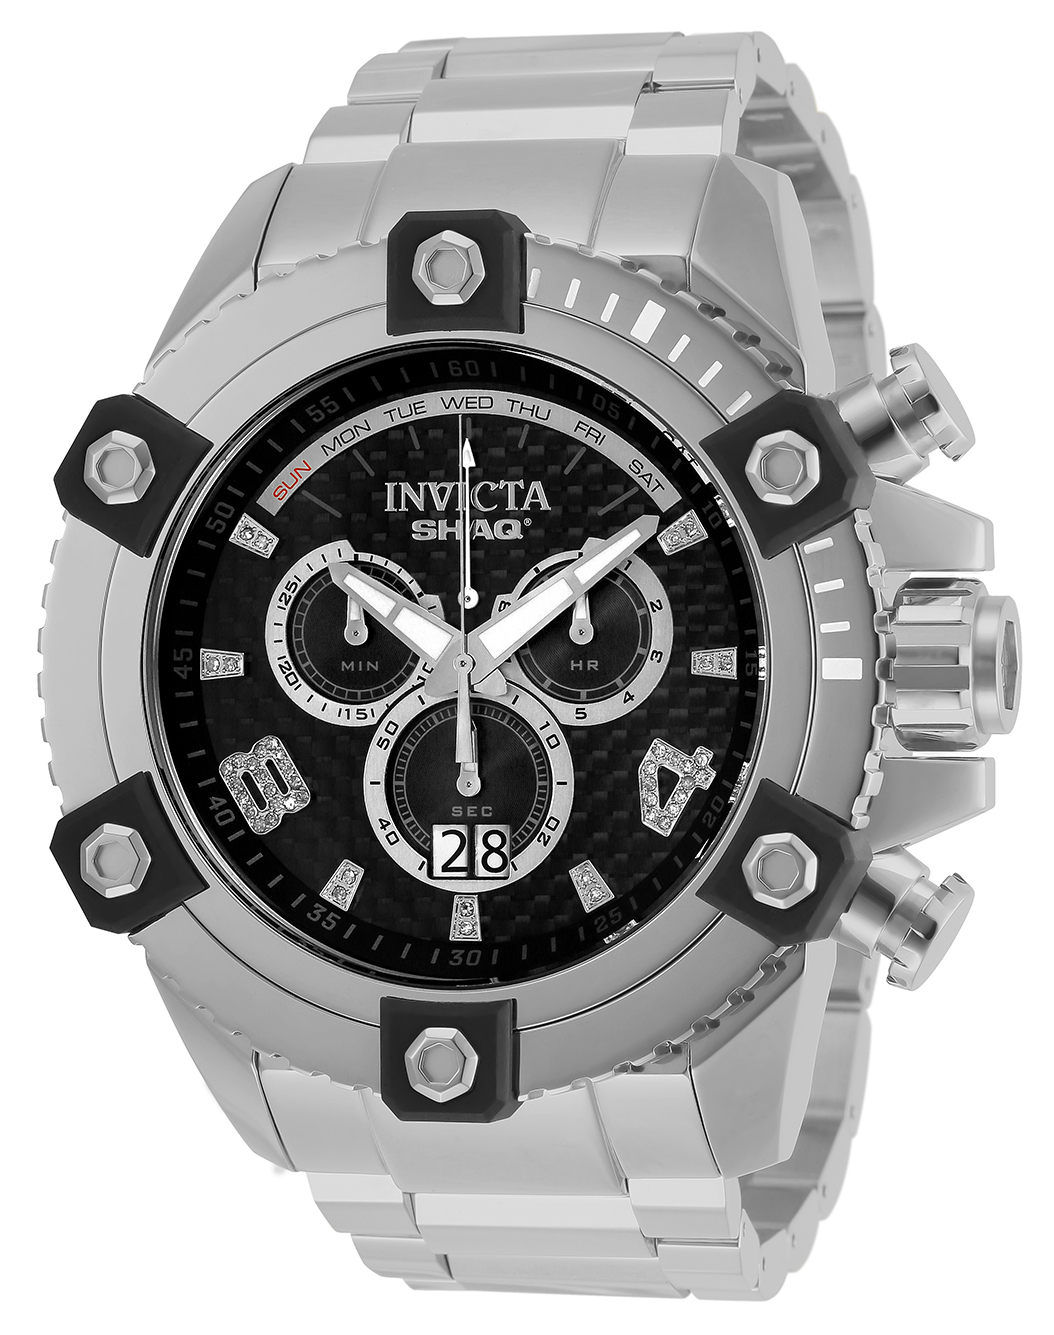 Invicta SHAQ 0.19 Carat Diamond Men's Watch - 60mm, Steel (33725)